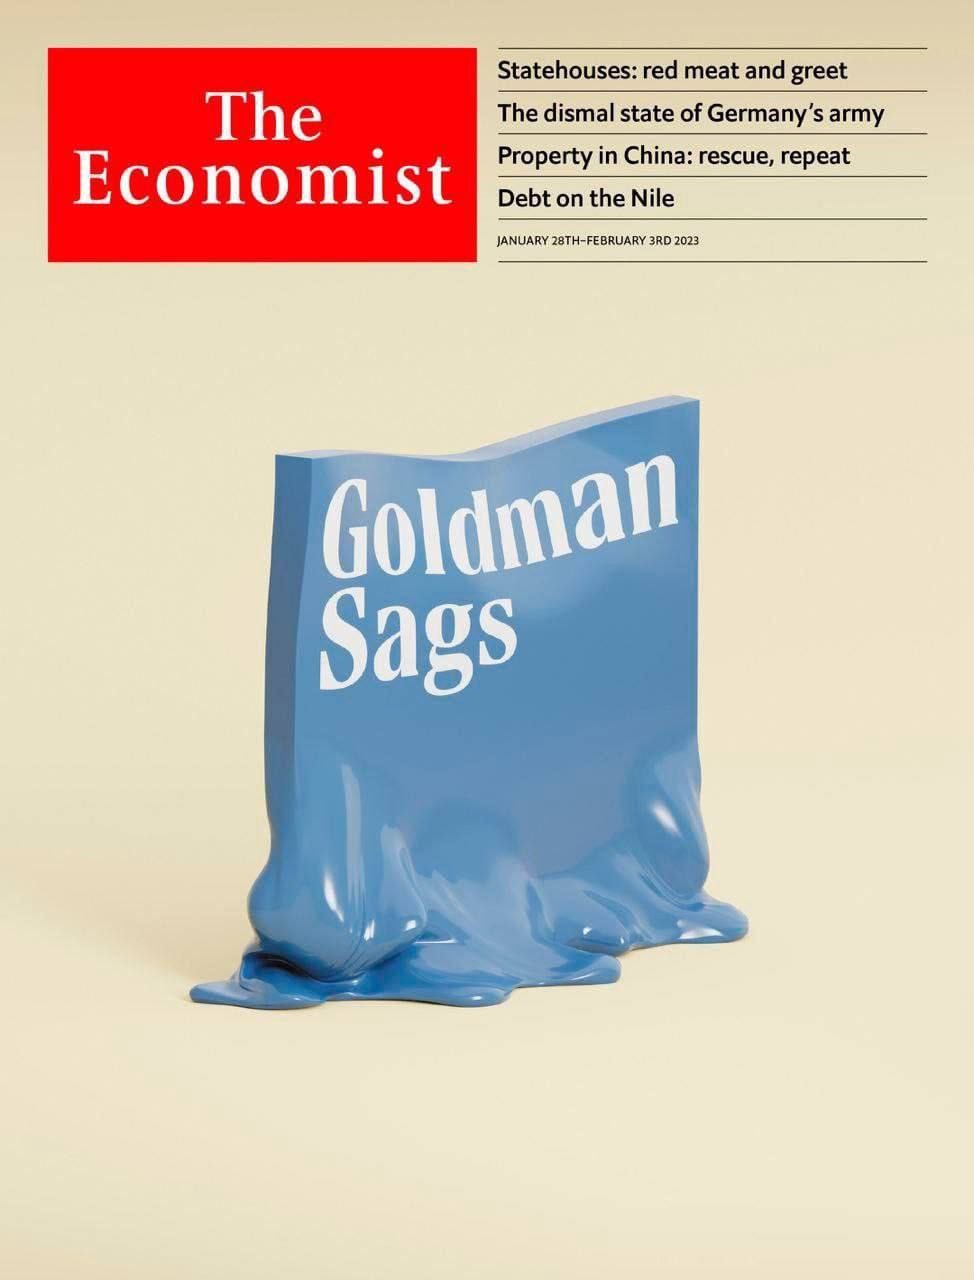 क्या दुनिया पागल हो रही है? द इकोनॉमिस्ट (The Economist) के नए कवर (cover) की समीक्षा